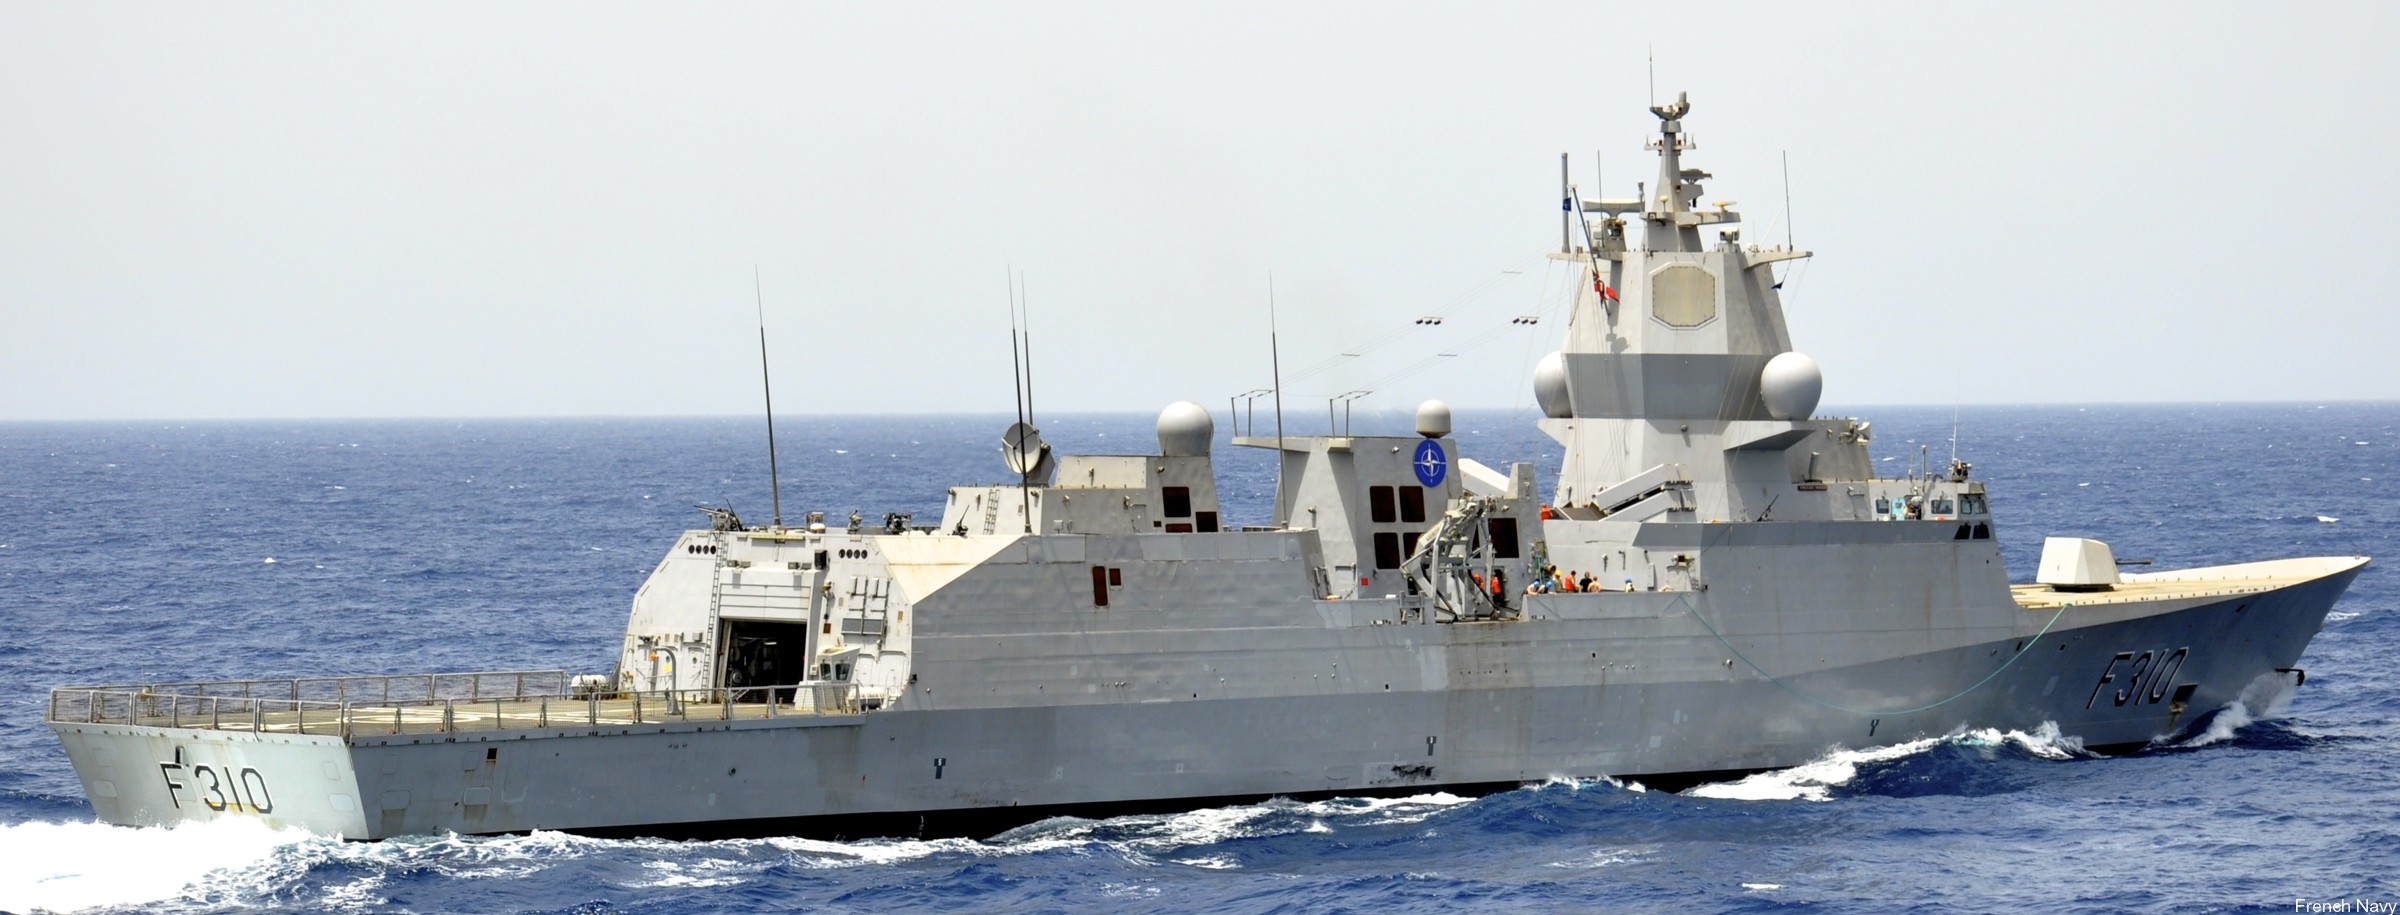 f-310 fridtjof nansen hnoms knm frigate royal norwegian navy sjoforsvaret 10